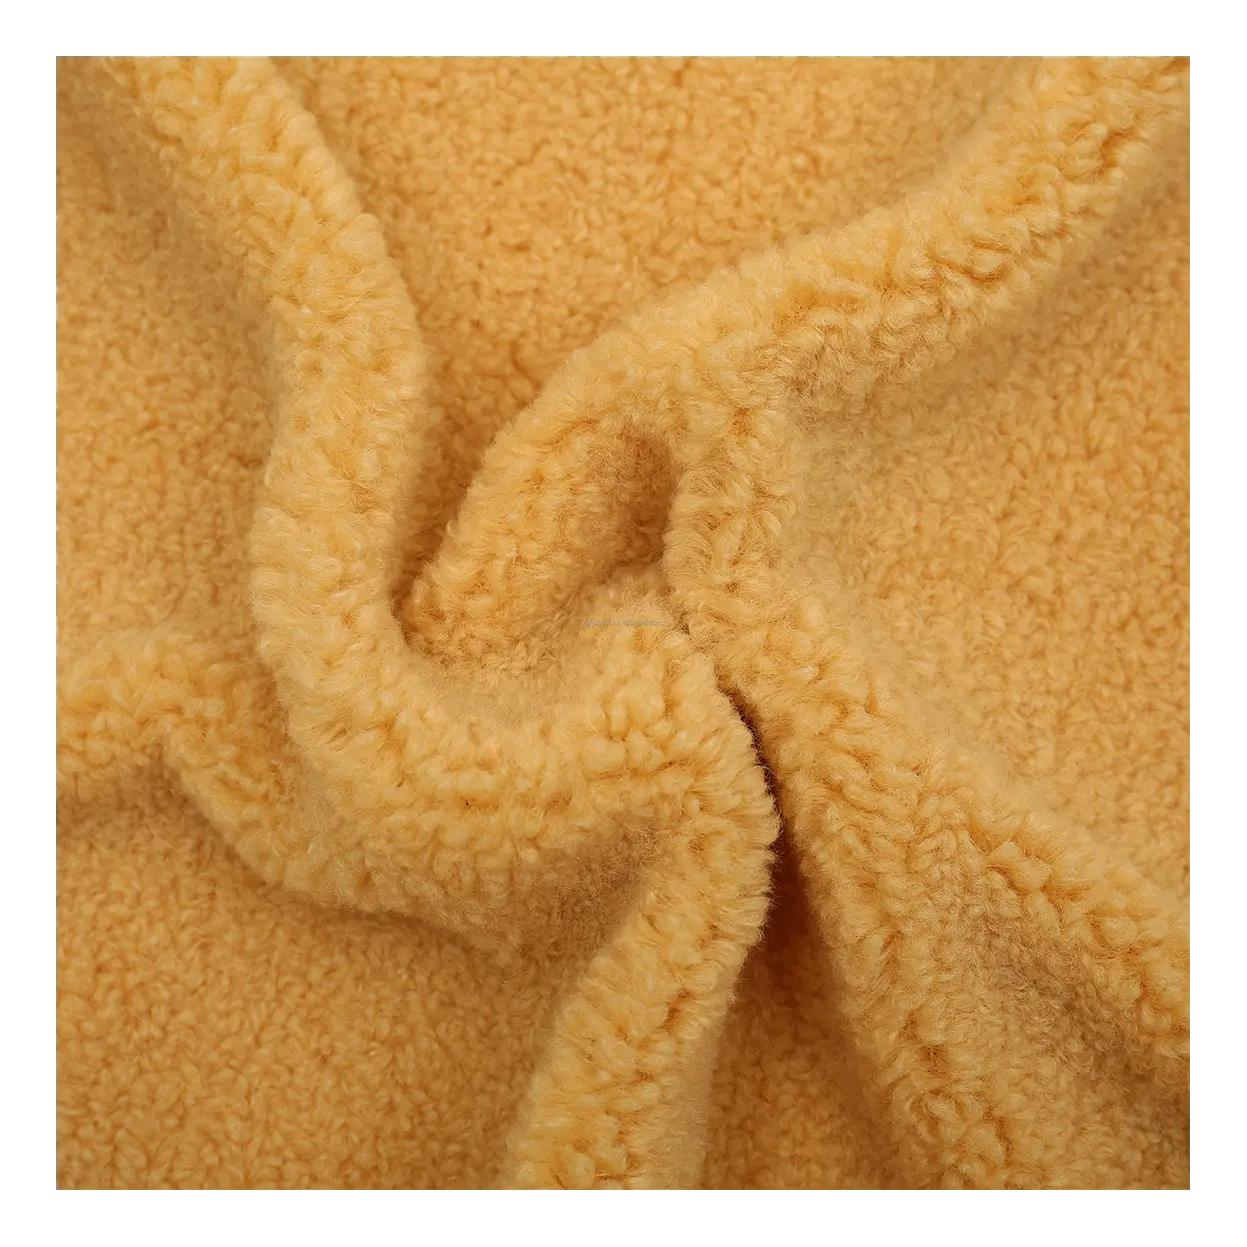 Vente chaude 100% Polyester recyclé tissé tricoté laine Tweed Plaid fabricant hiver Stock velours polaire tissu